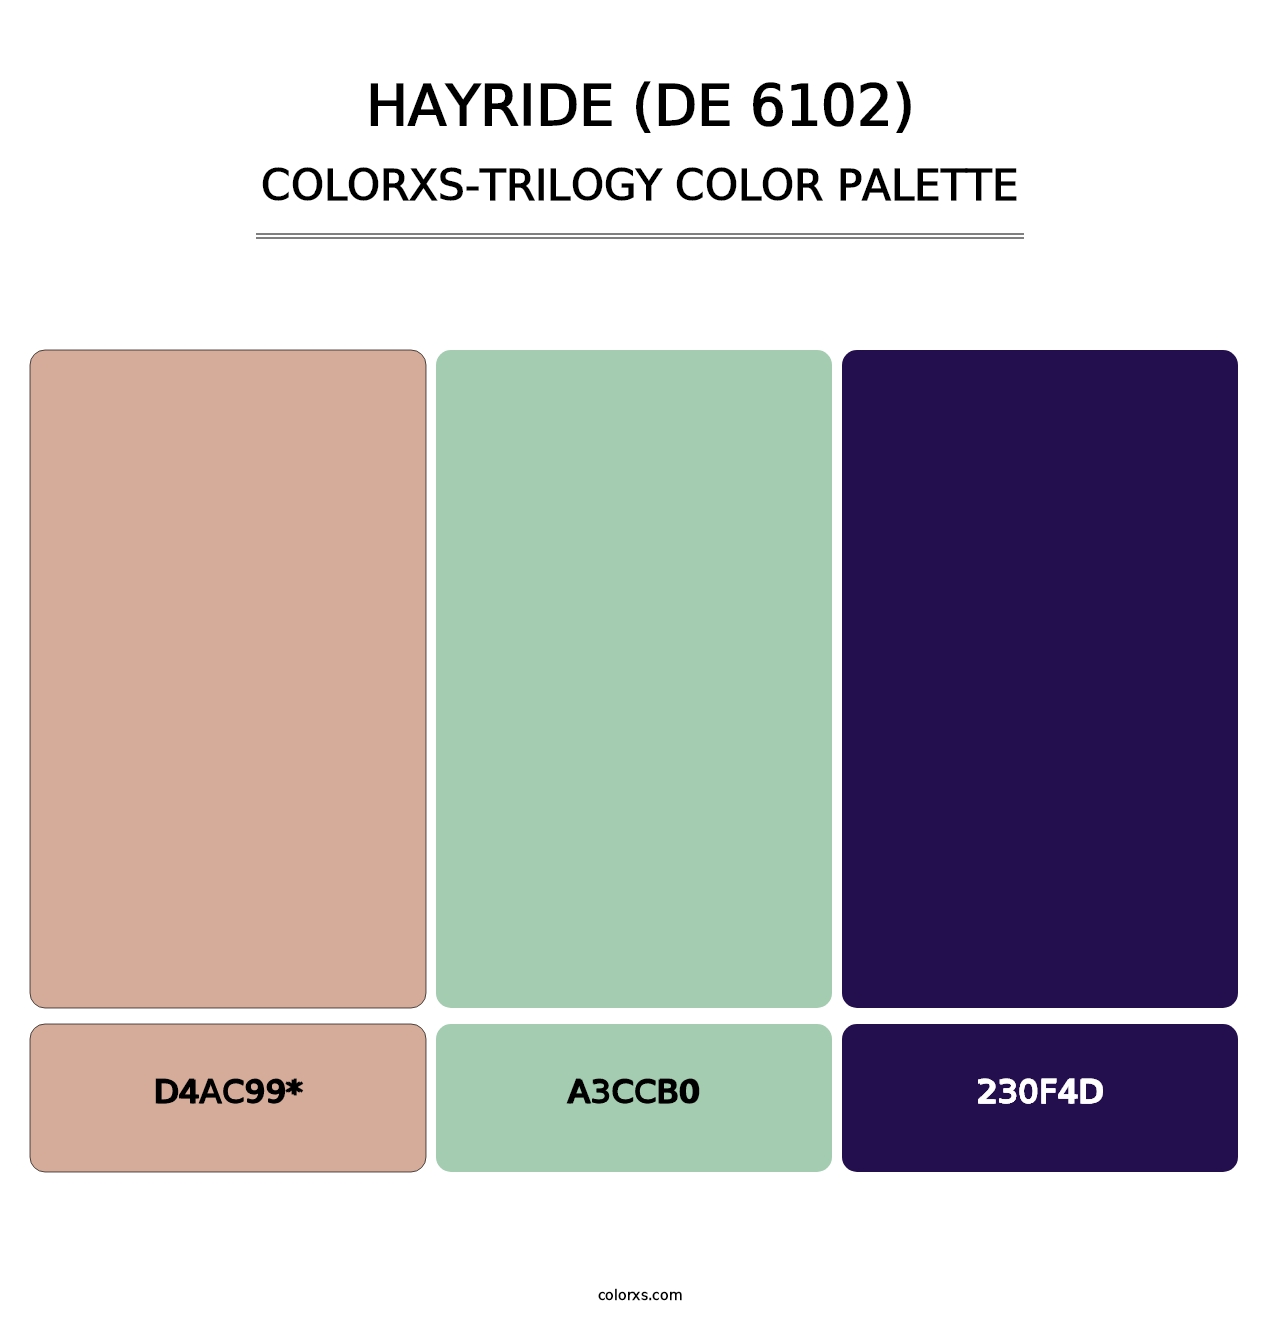 Hayride (DE 6102) - Colorxs Trilogy Palette